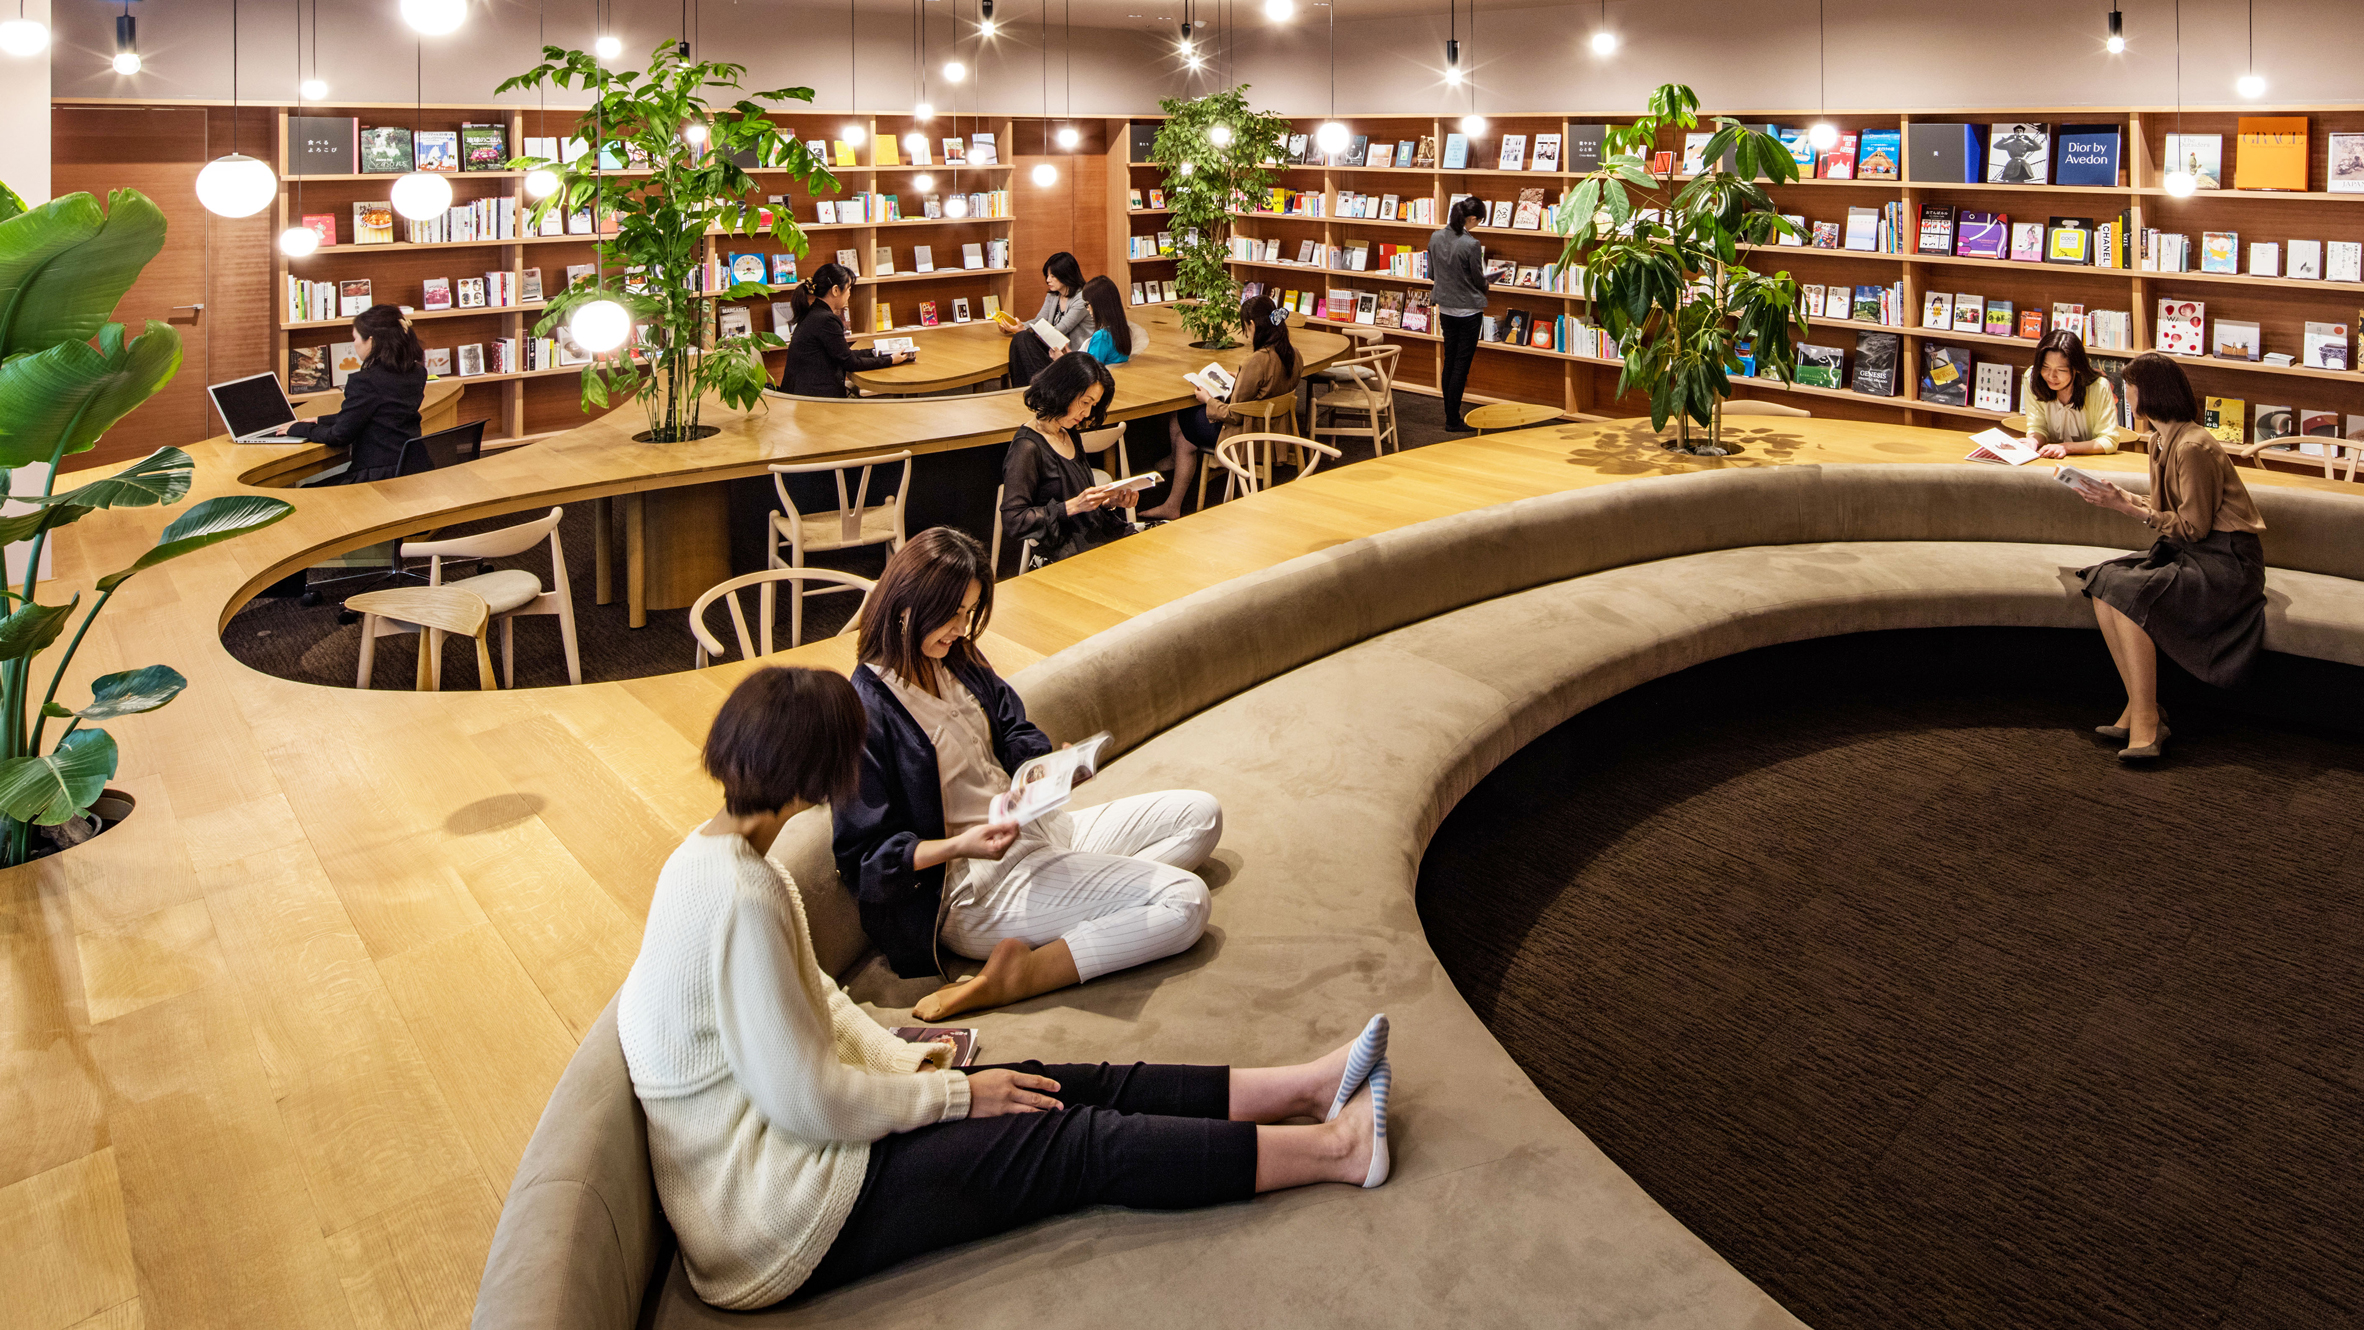 Что делать library. Библиотека Японии читальный зал. Современная библиотека. Интерьер читального зала библиотеки. Интерьер современной библиотеки.